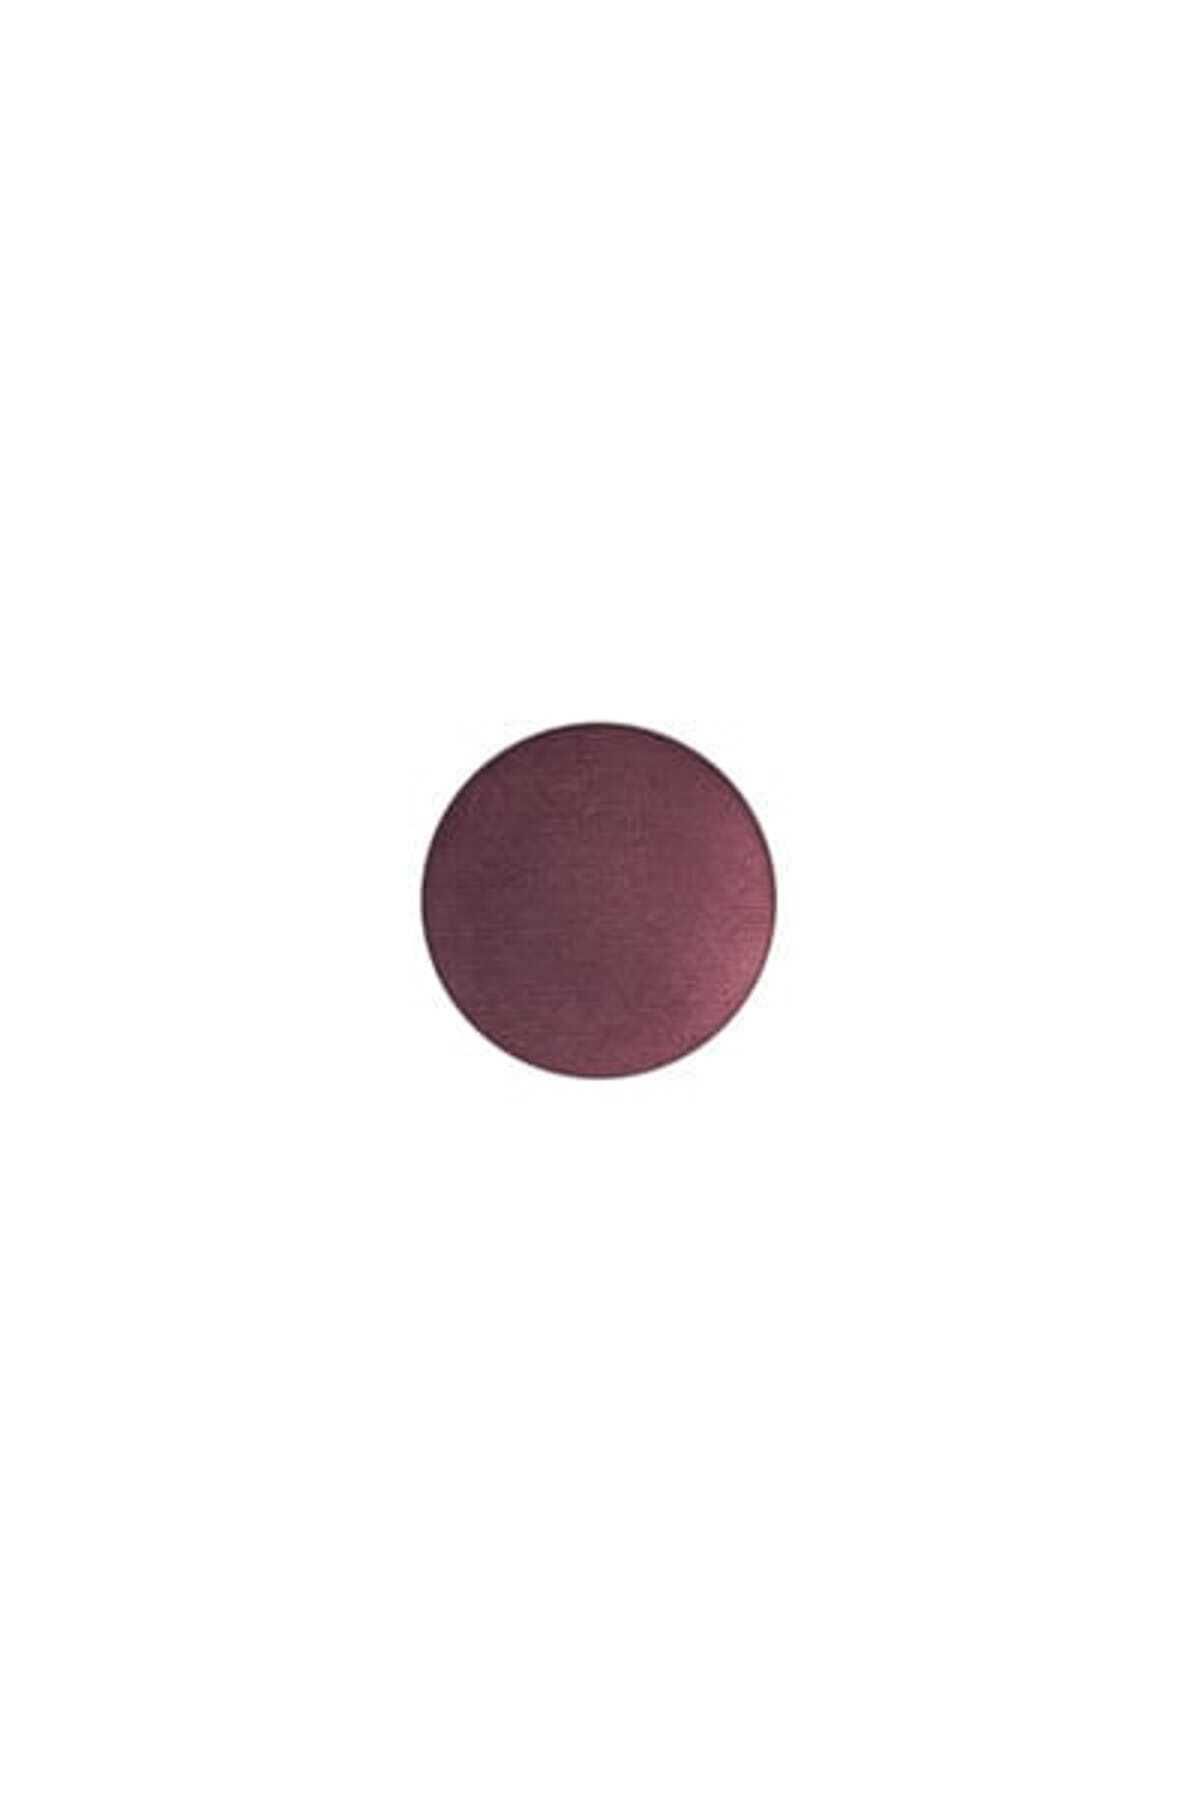 Mac Mac - Refill Far Sketch Eye Shadow 1.5 g Skin135